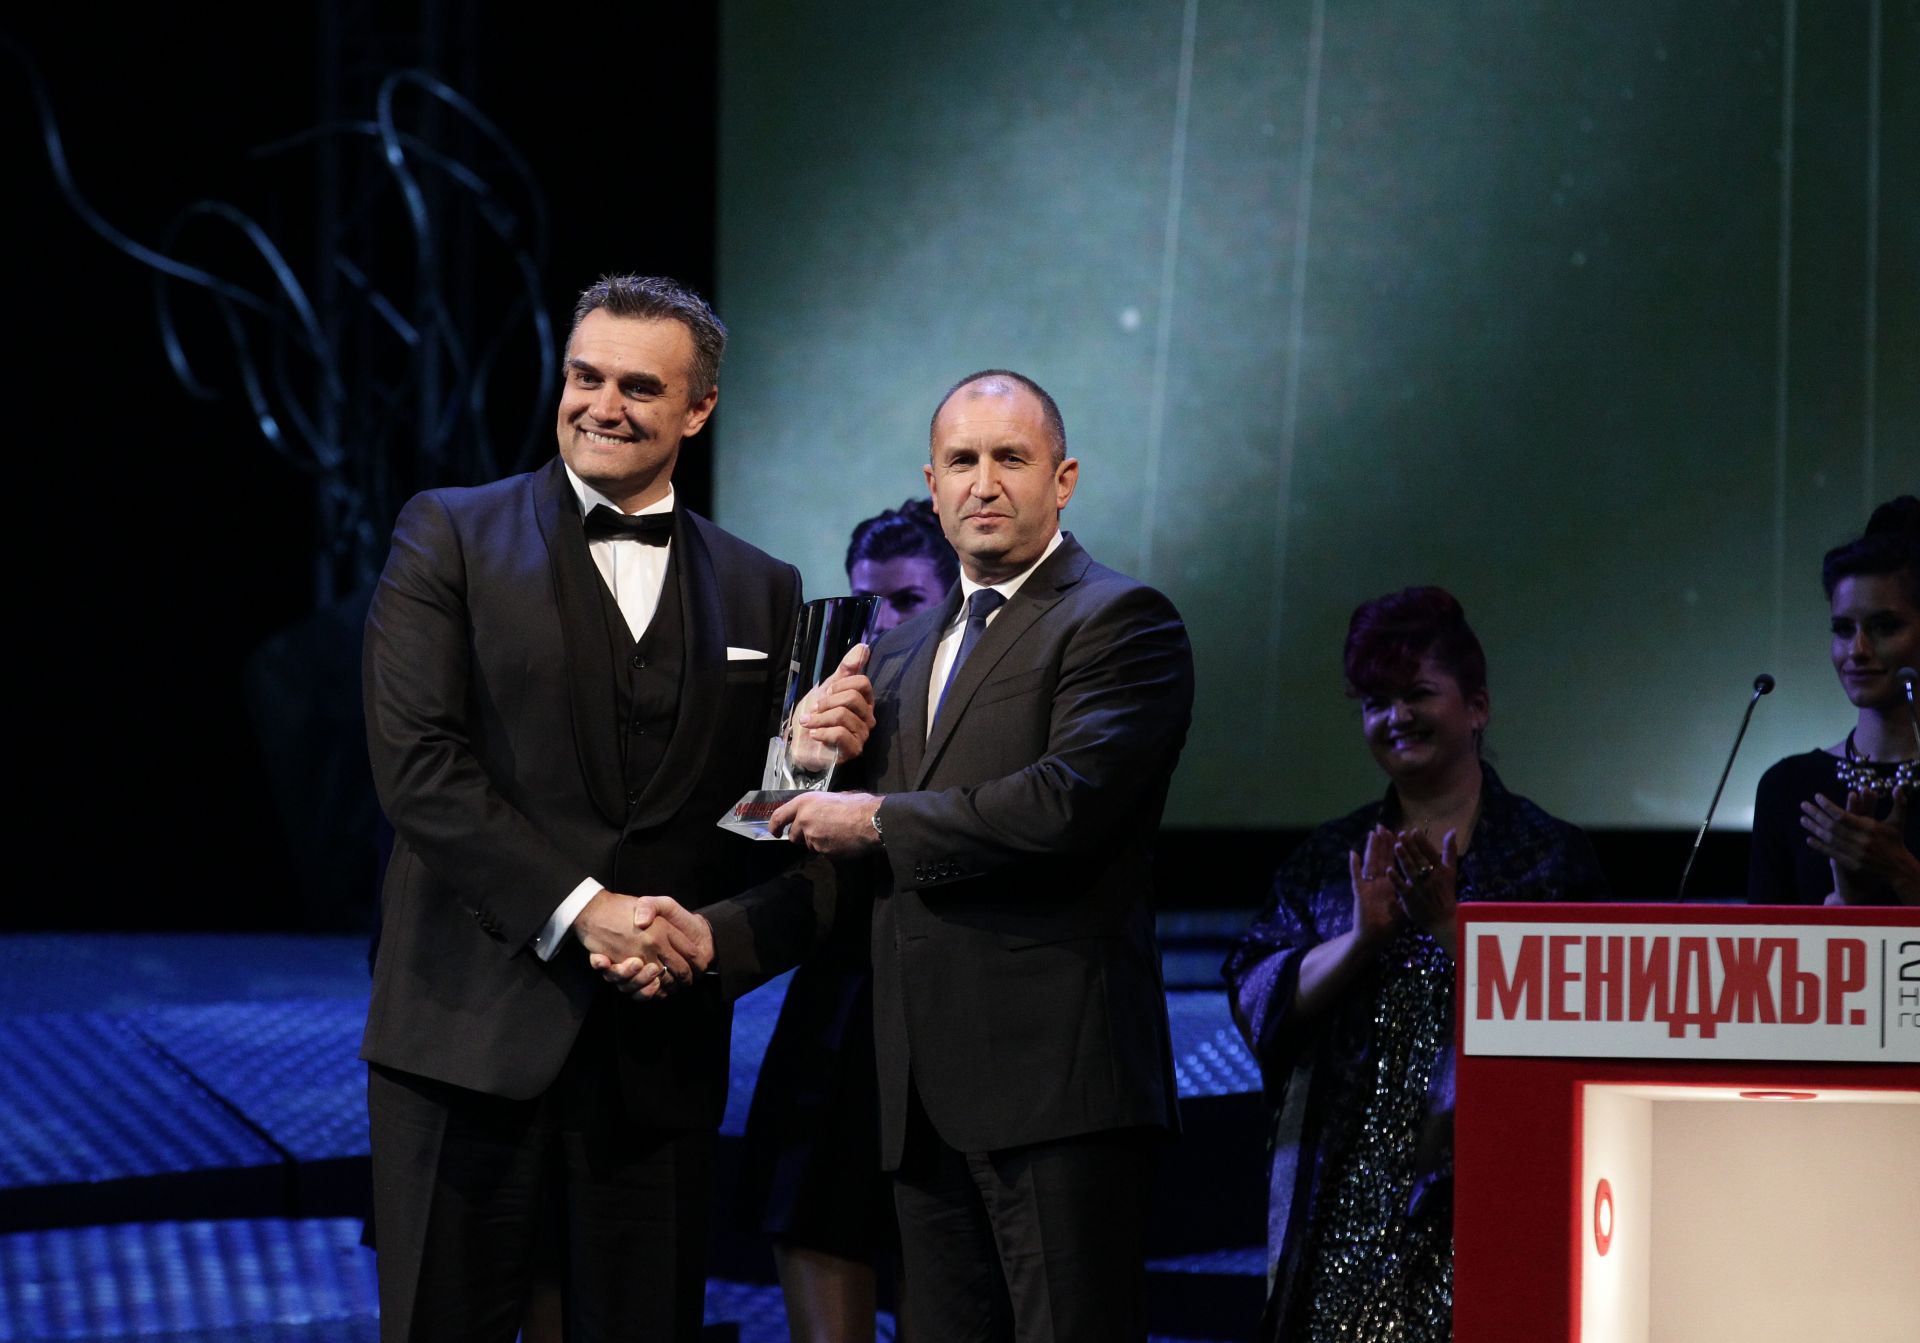 Александър Димитров, изпълнителен директор на А1 България, получи отличието "Мениджър на годината" за 2018 г. от президента Румен Радев